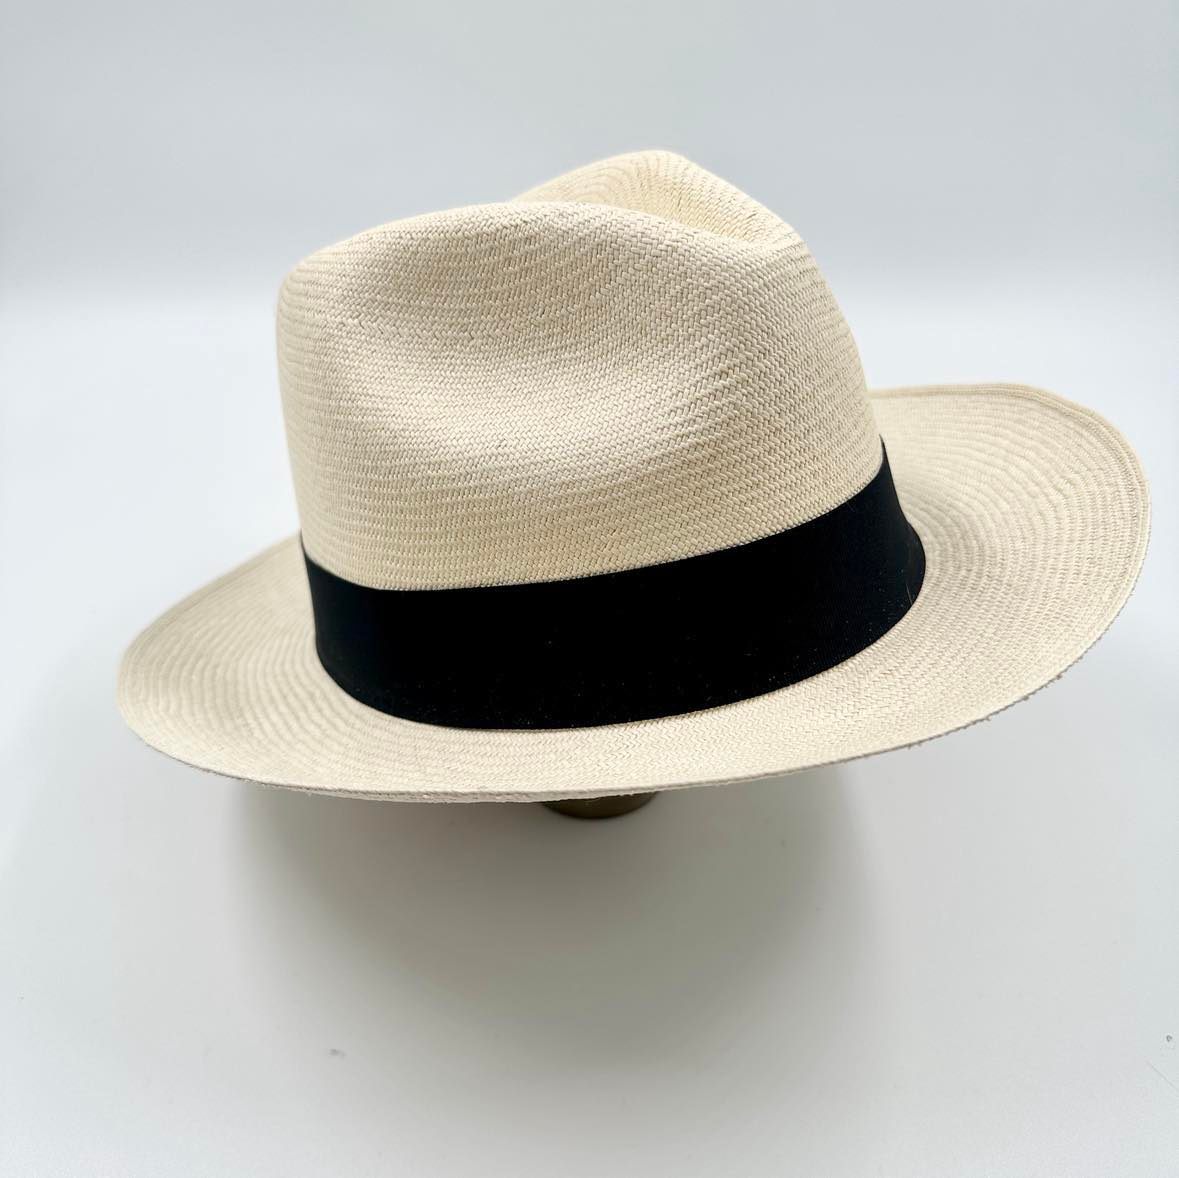 Ægte Montecristi Fedora Panama Hat med en kvalitet på 17-18 fletning pr. inch - høj kvalitet og unik da den er håndflettet